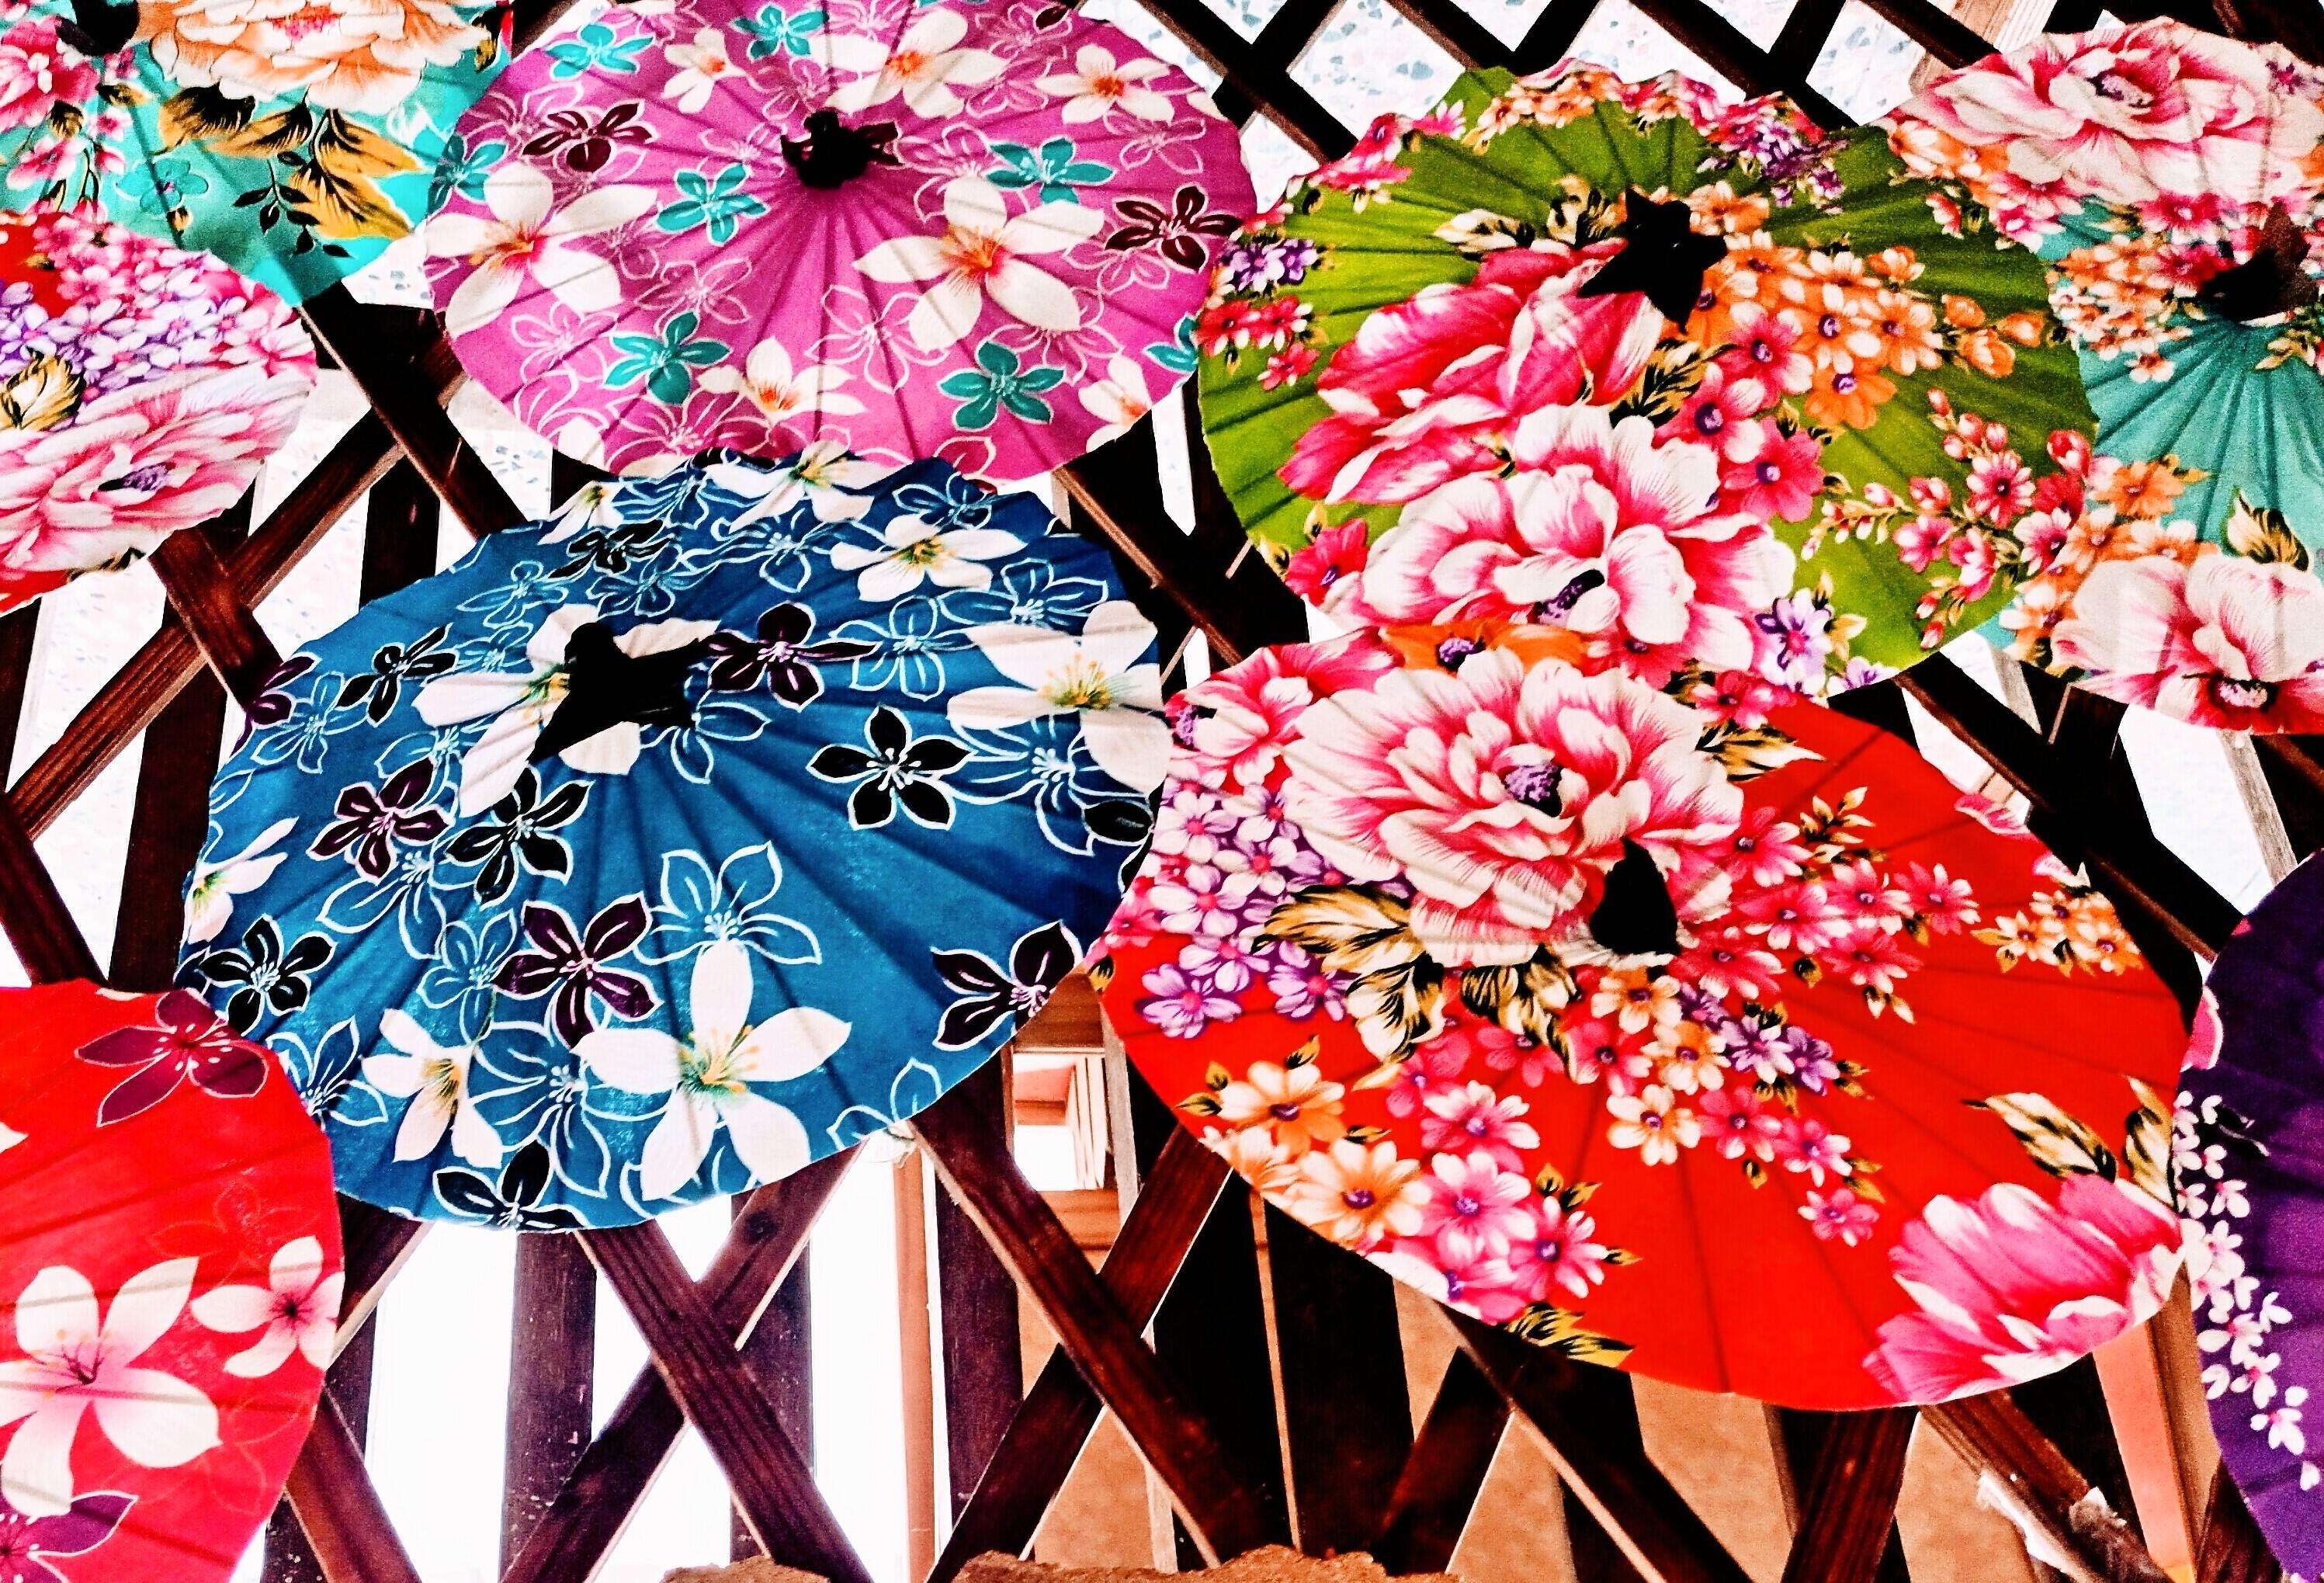 客家花布で作られたミニ傘